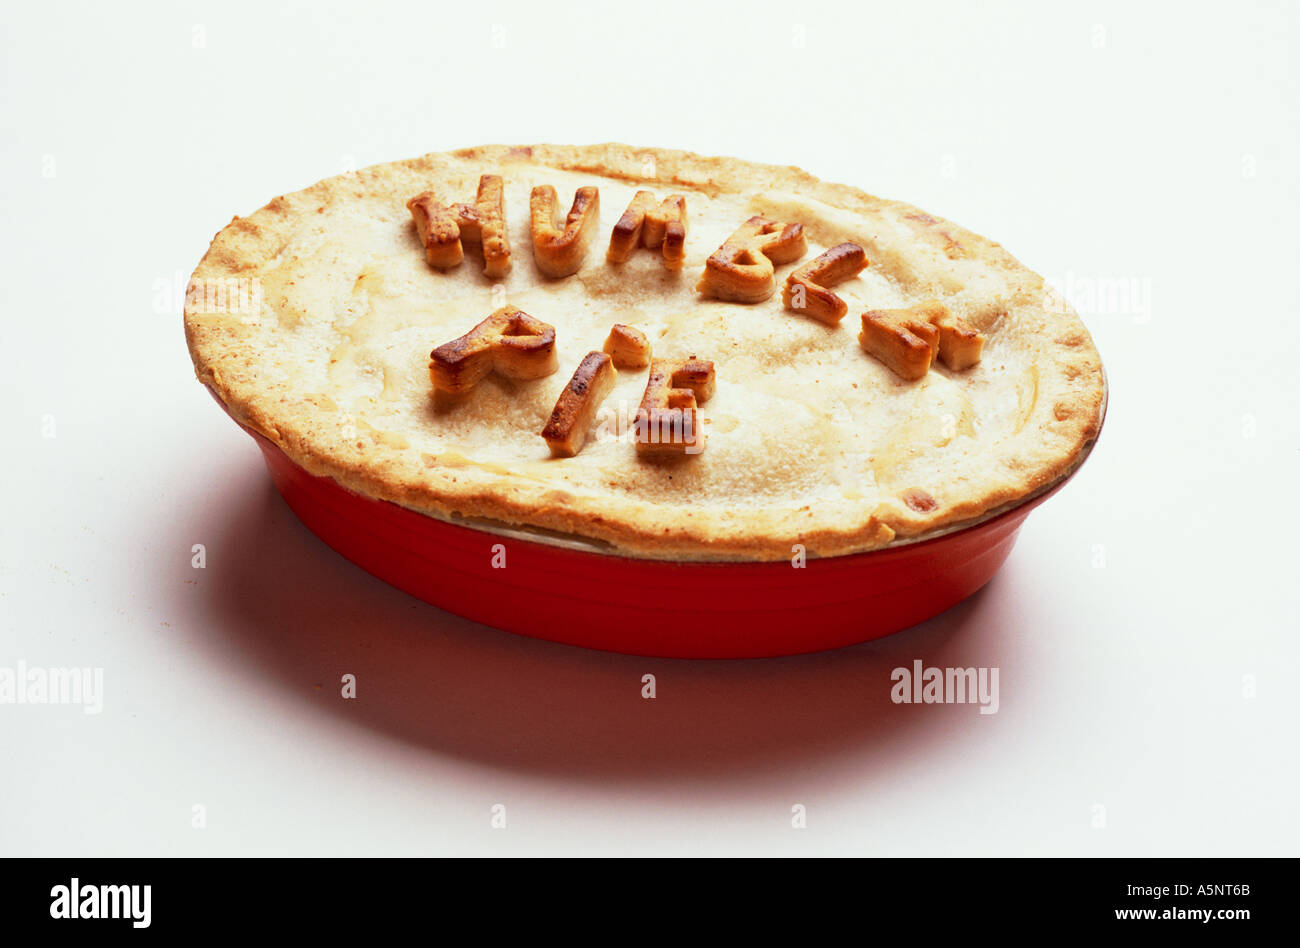 Humble pie Stock Photo